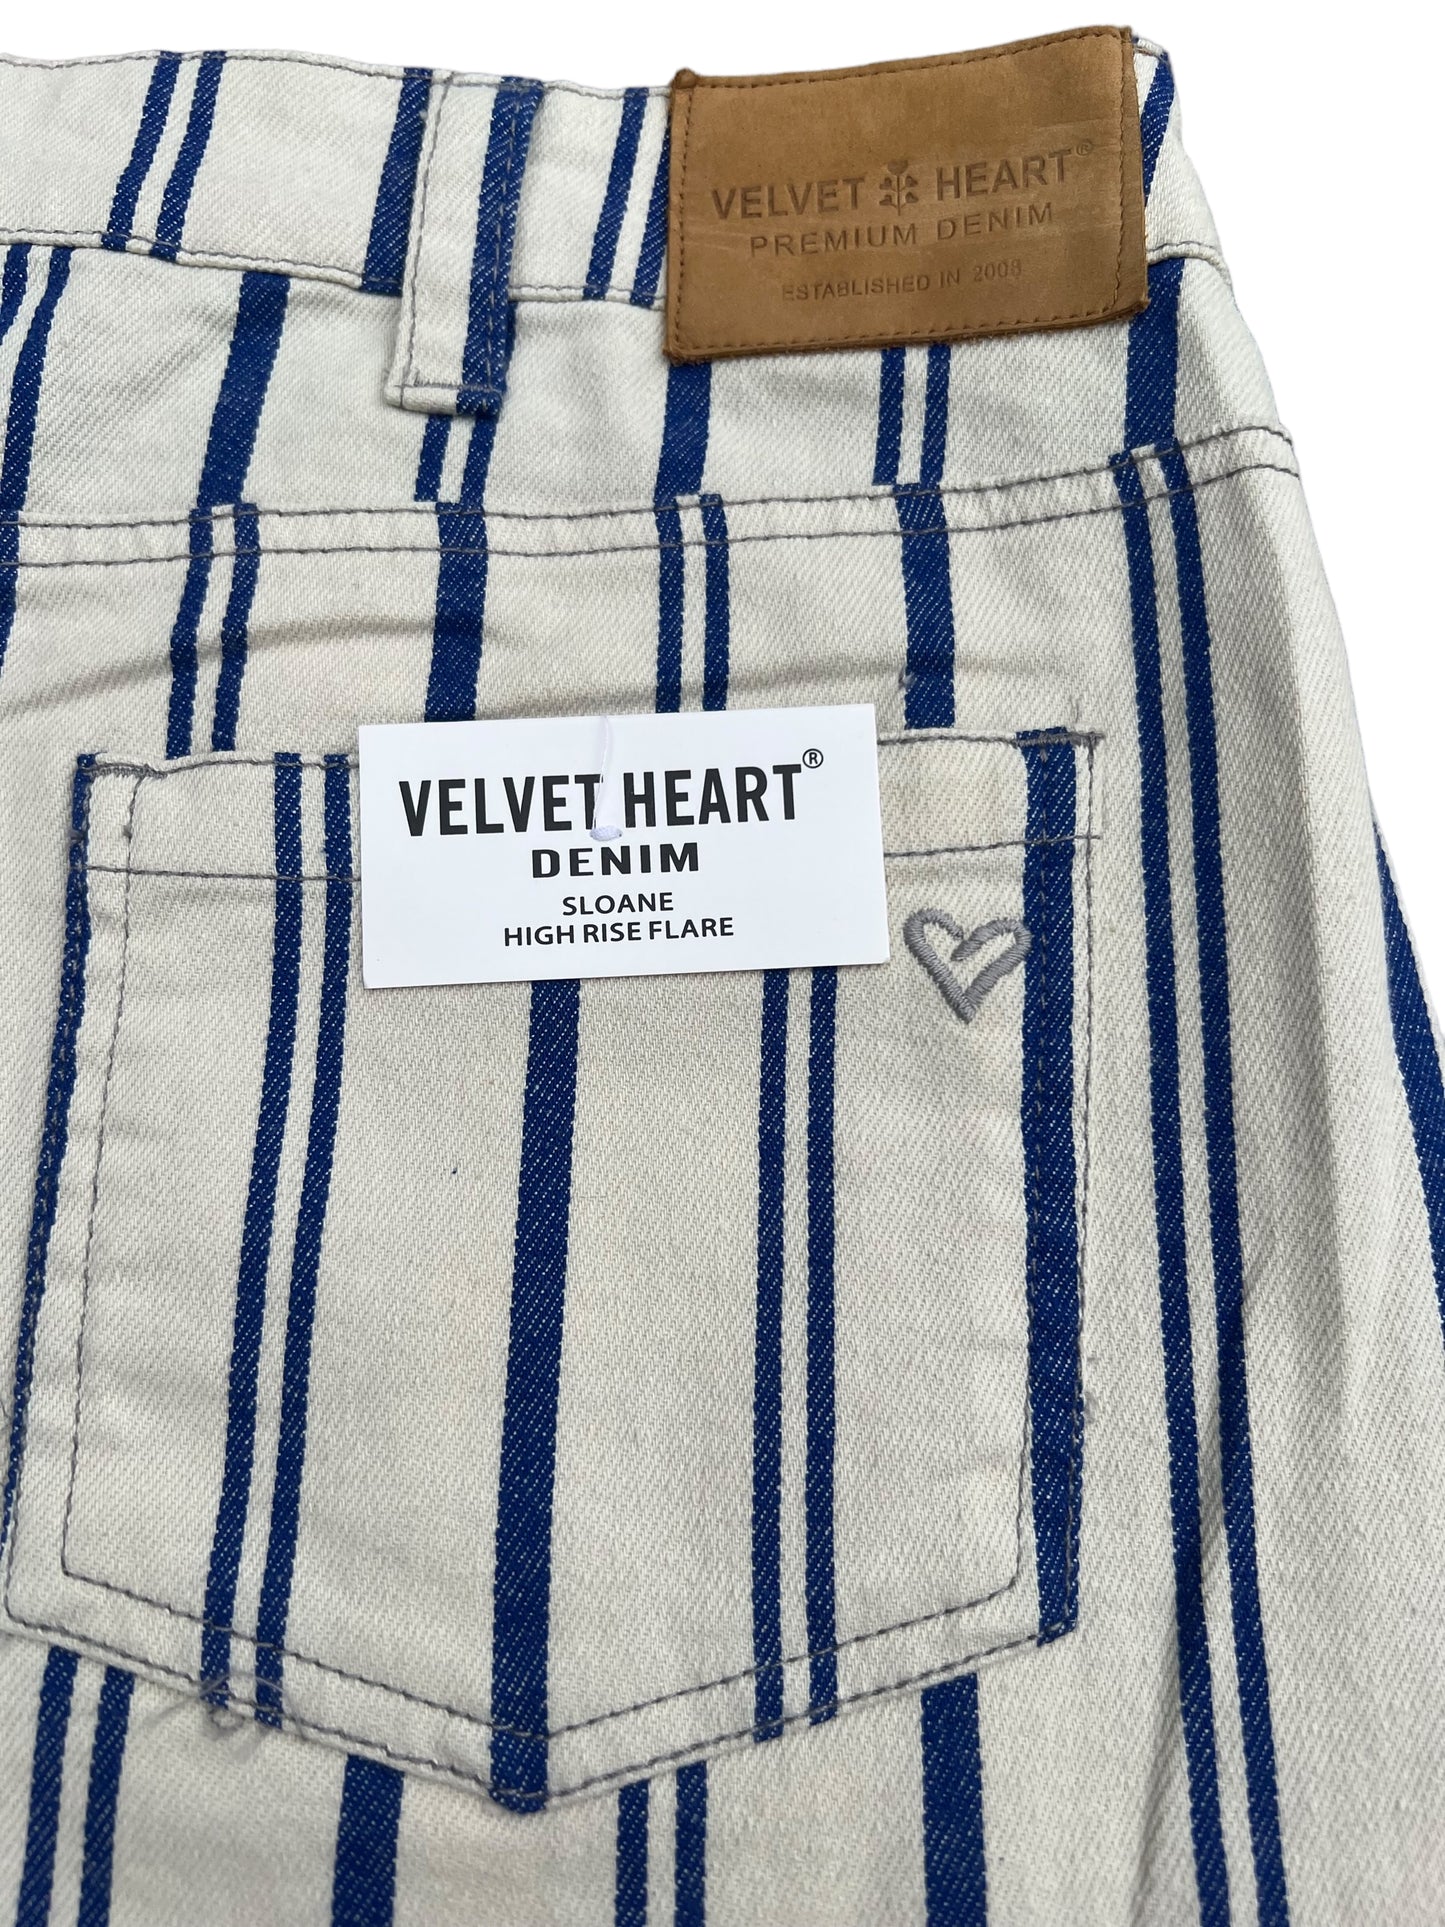 Velvet Heart Denim